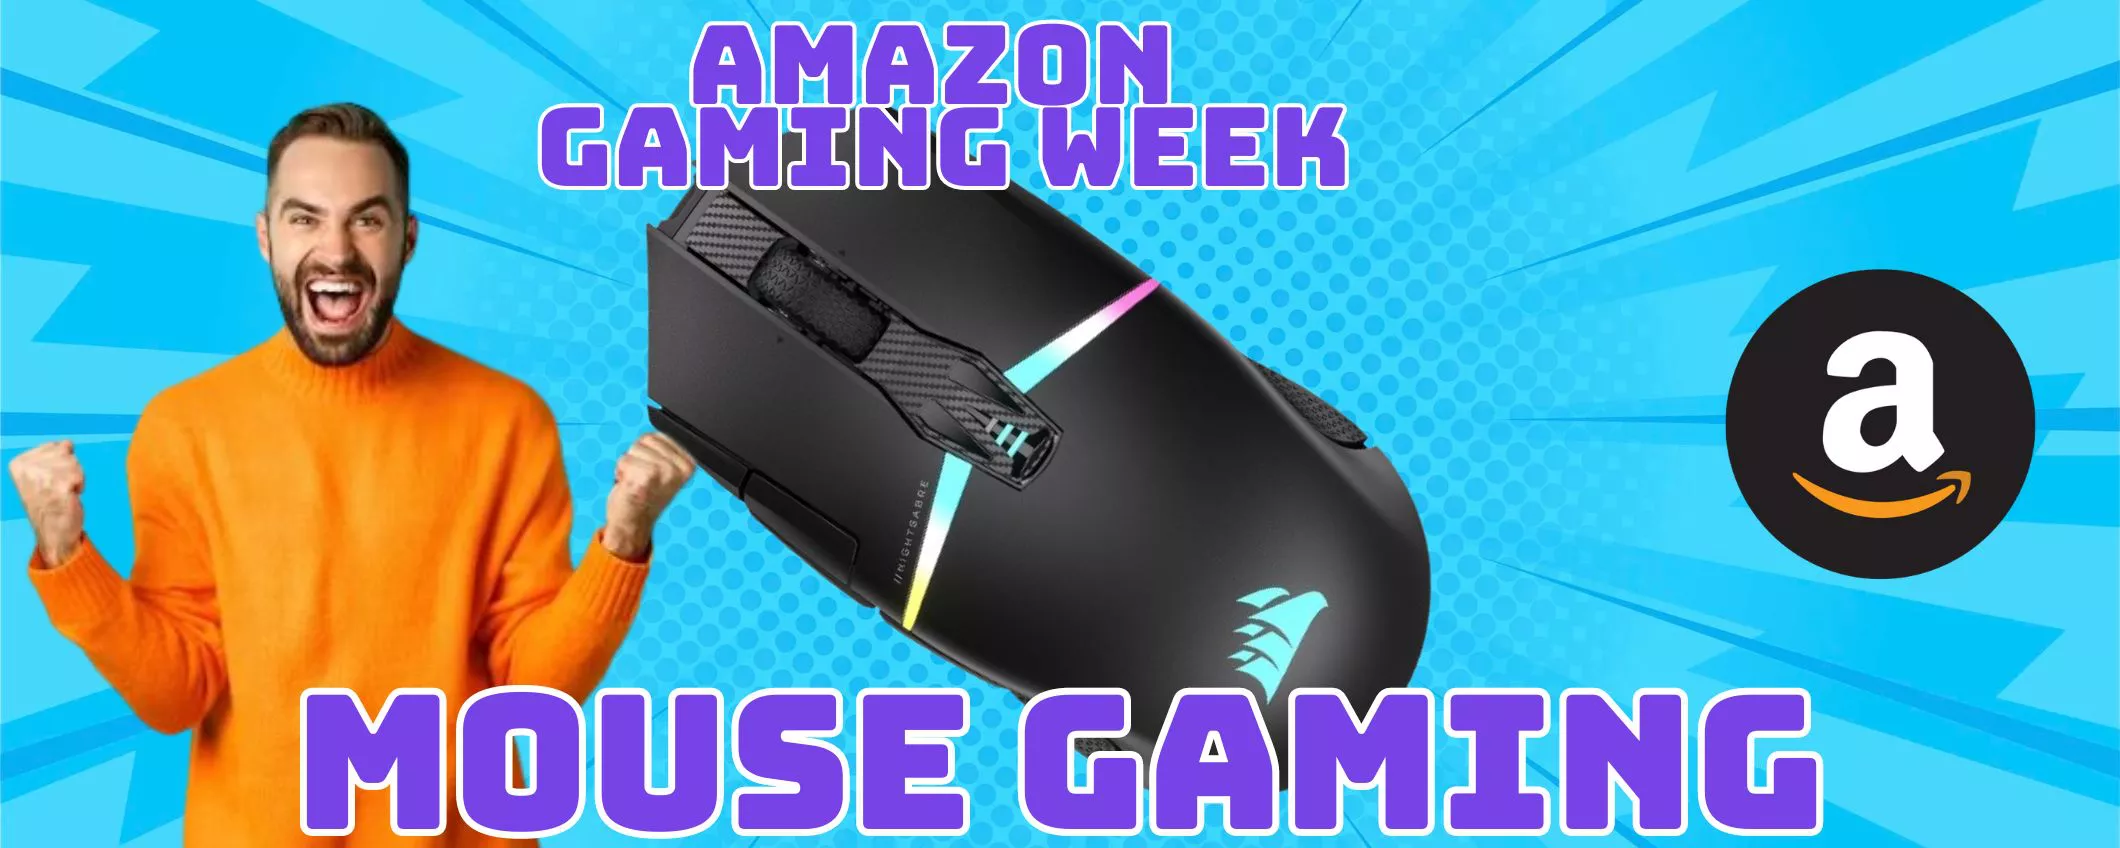 GAMING WEEK: Sconti eccezionali sui migliori mouse gaming!